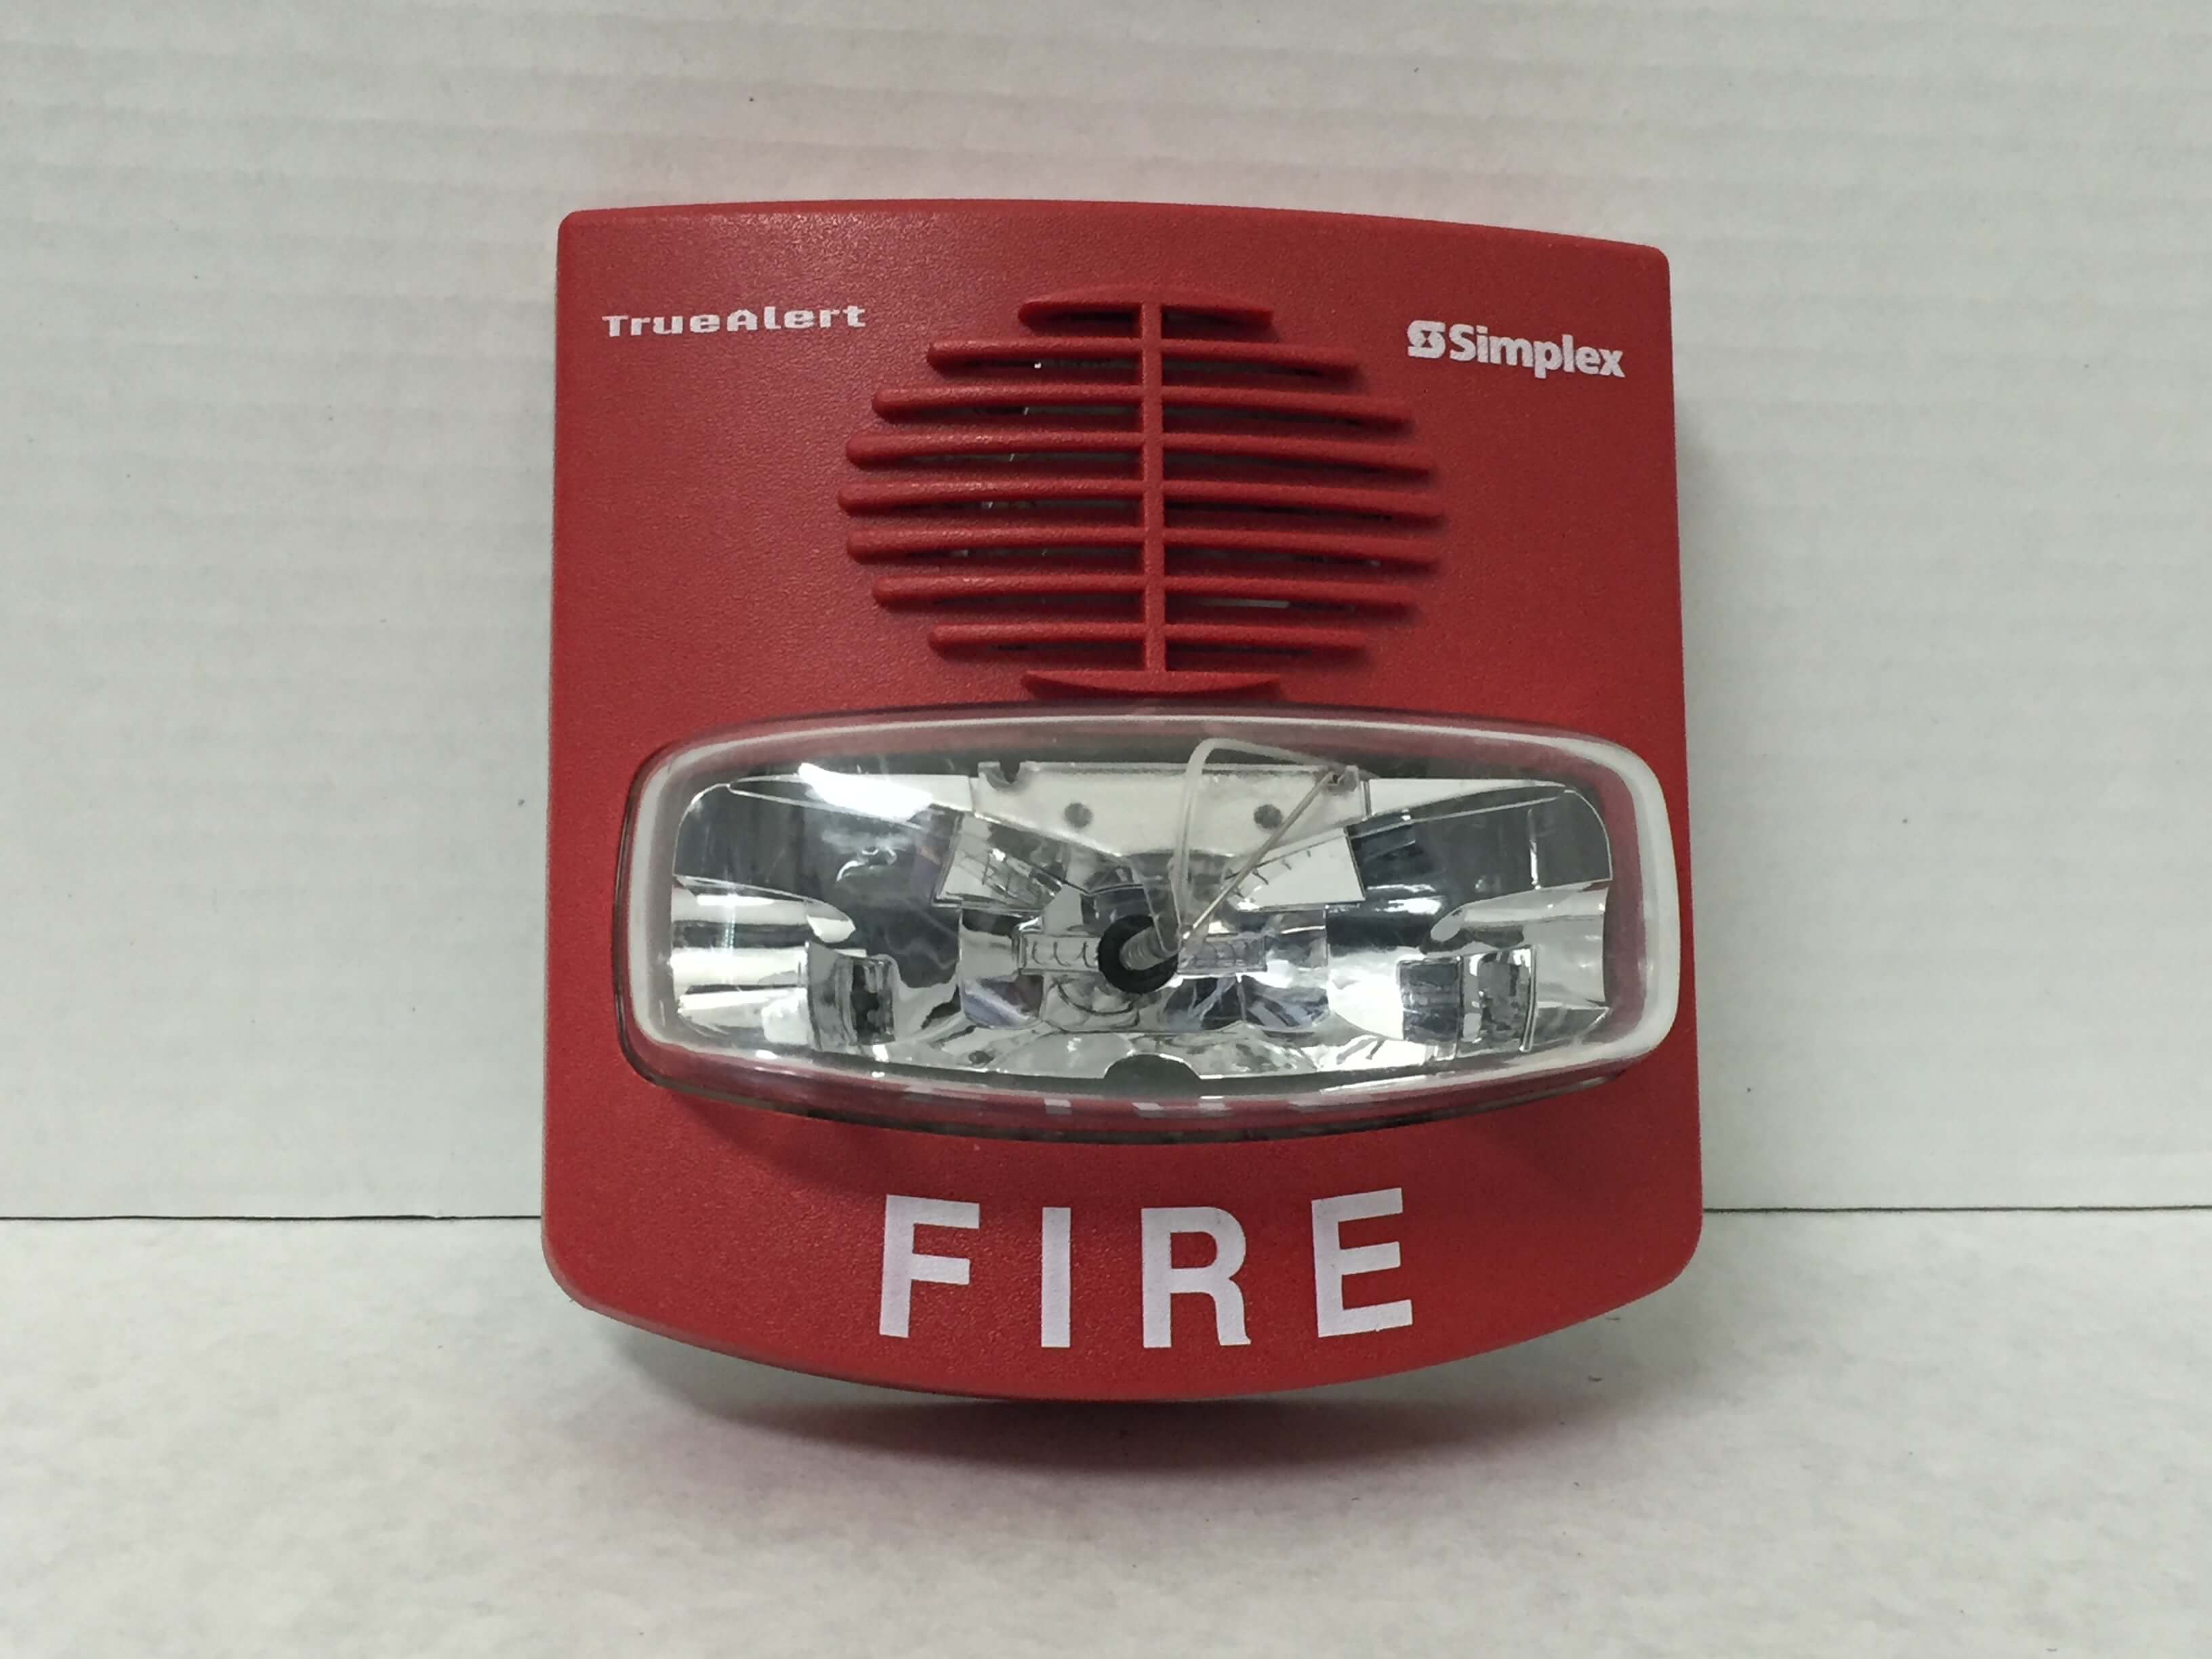 Simplex 4903-9427 - FireAlarms.tv - jjinc24/U8oL0's Fire Alarm ...